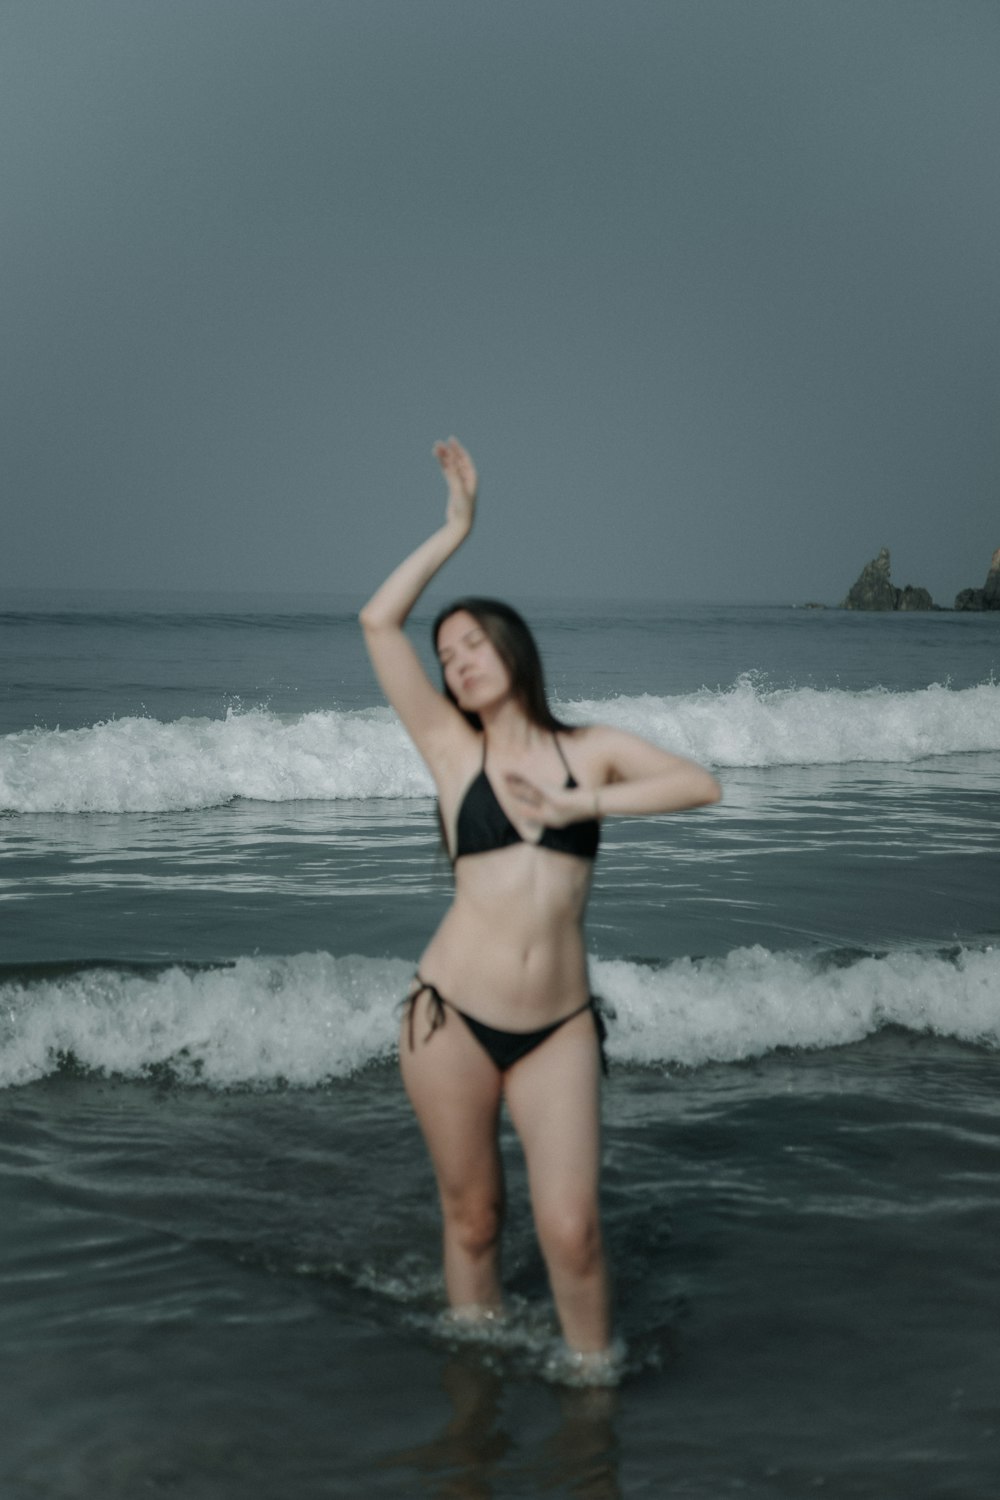 a woman in a bikini standing in the ocean